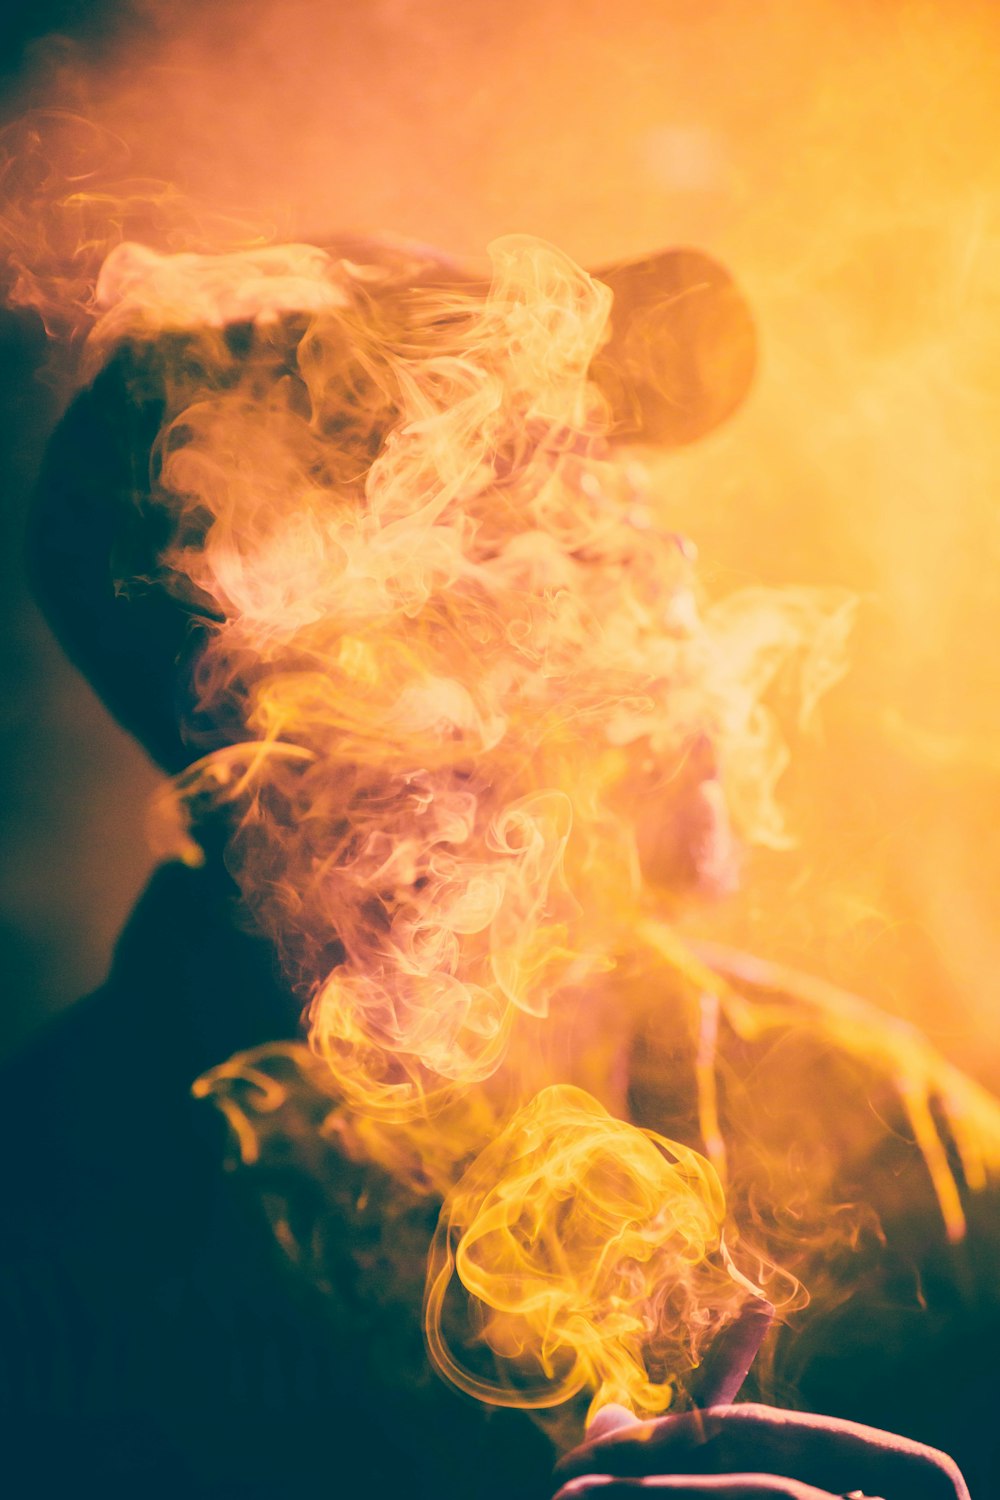 Fotografia macro do homem coberto pela fumaça do charuto